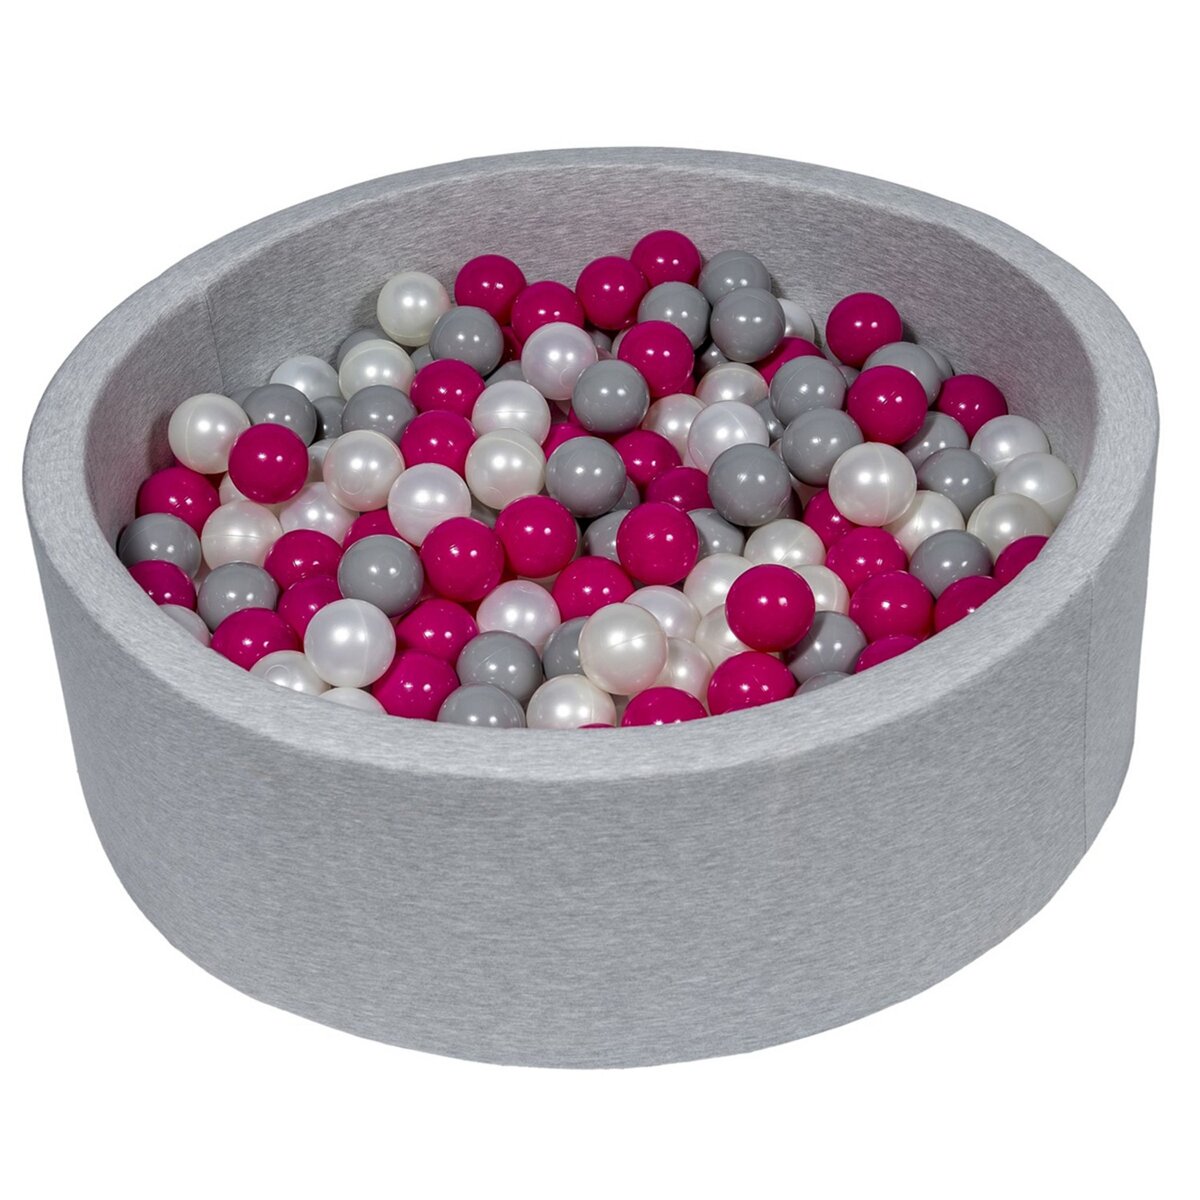  Piscine à balles Aire de jeu + 300 balles perle, rose, gris